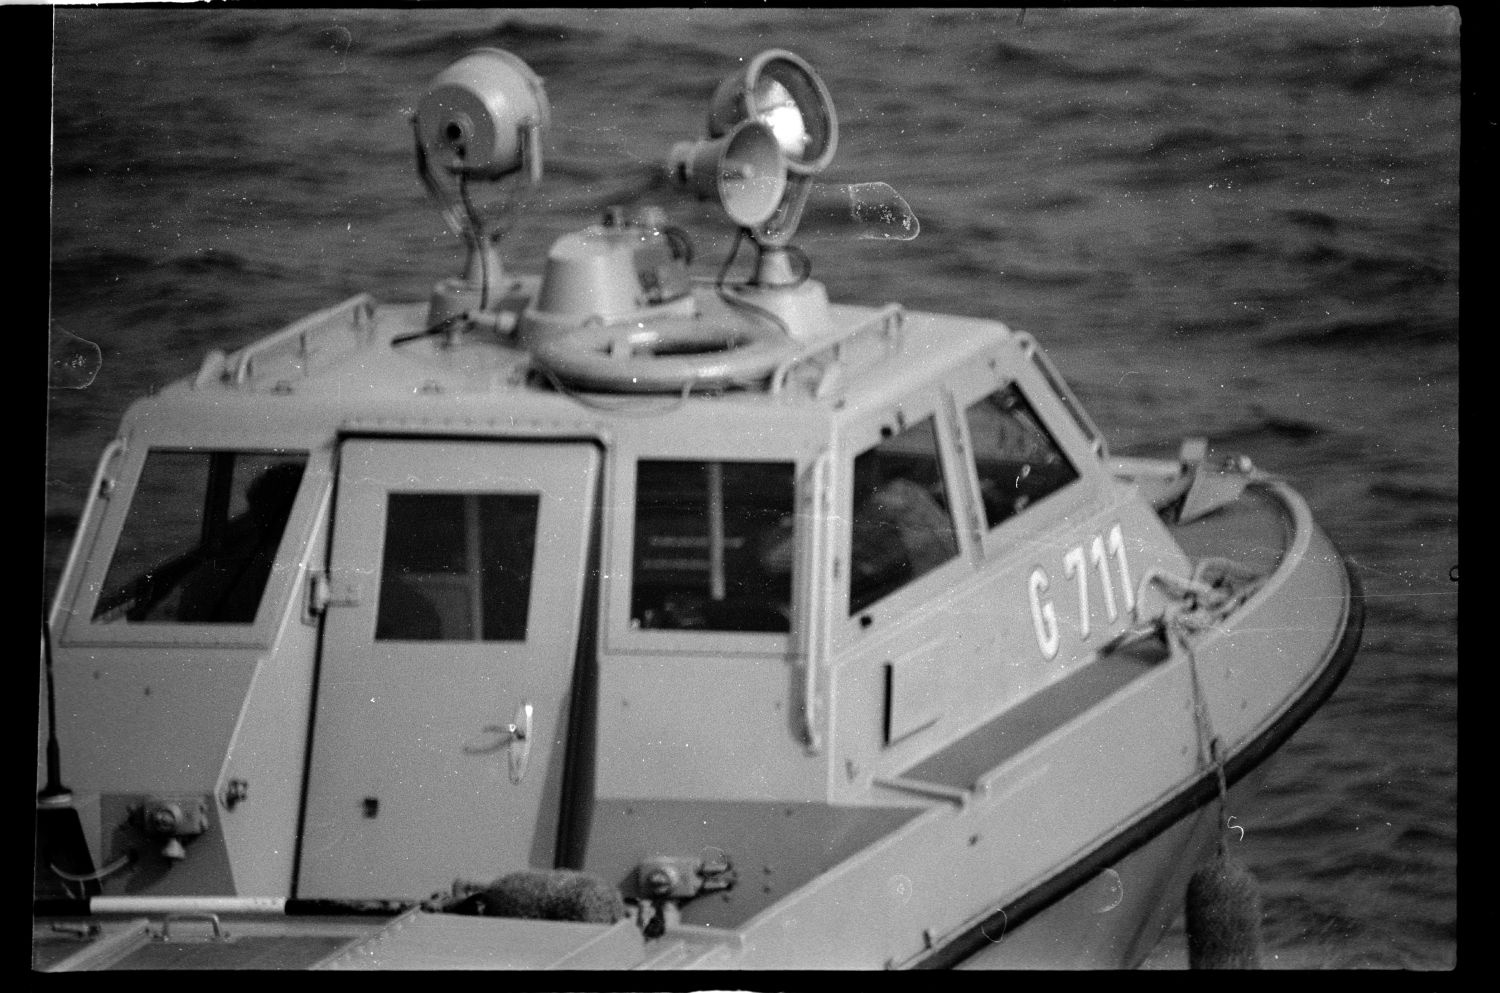 s/w-Fotografie: Patrouillenboot der Grenztruppen der DDR auf der Havel zwischen West-Berlin und Potsdam (AlliiertenMuseum/U.S. Army Photograph Public Domain Mark)